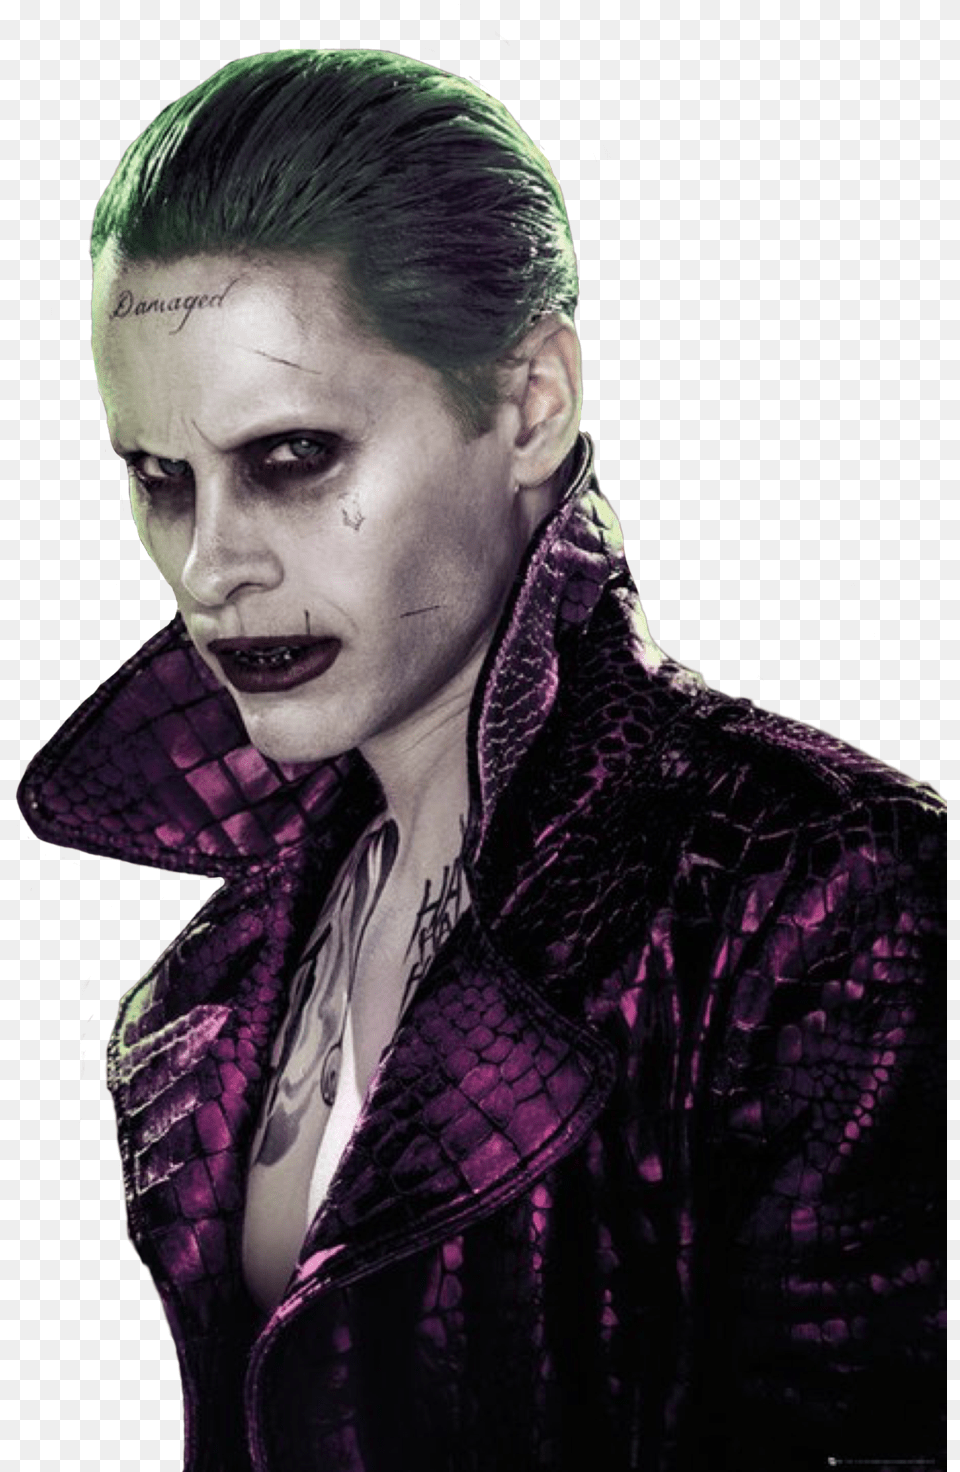 Suicide Squad Joker Poster 61 X 915 Cm, Portrait, Photography, Person, Face Png